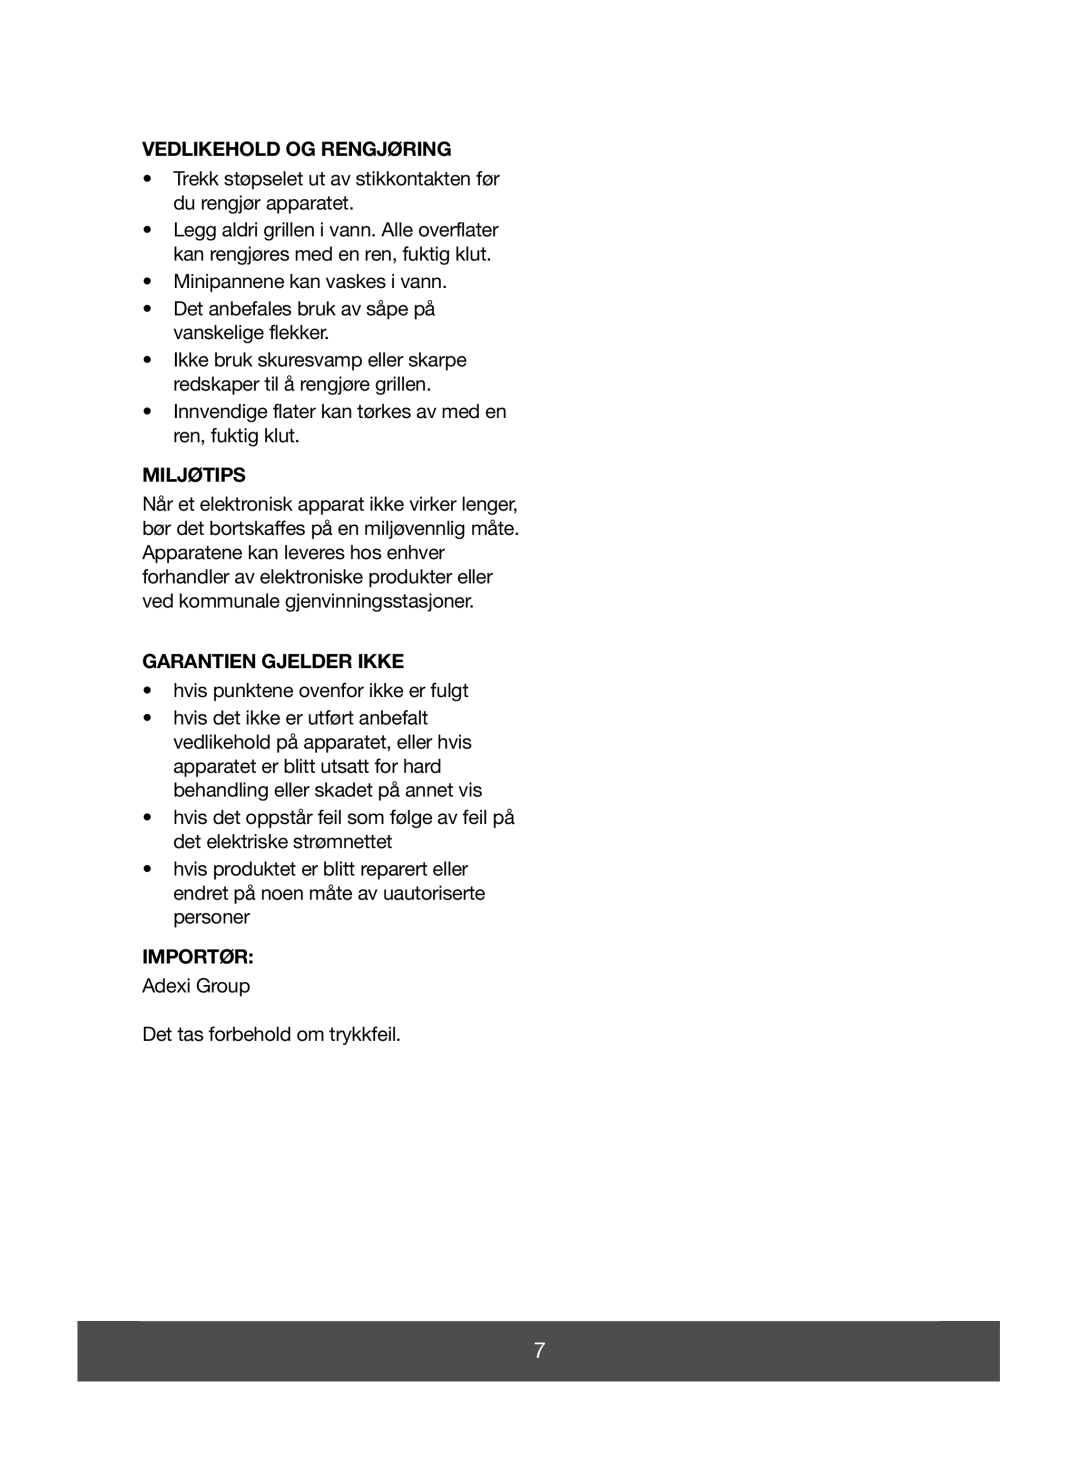 Melissa 643-052 manual Vedlikehold Og Rengjøring, Miljøtips, Garantien Gjelder Ikke, Importør 